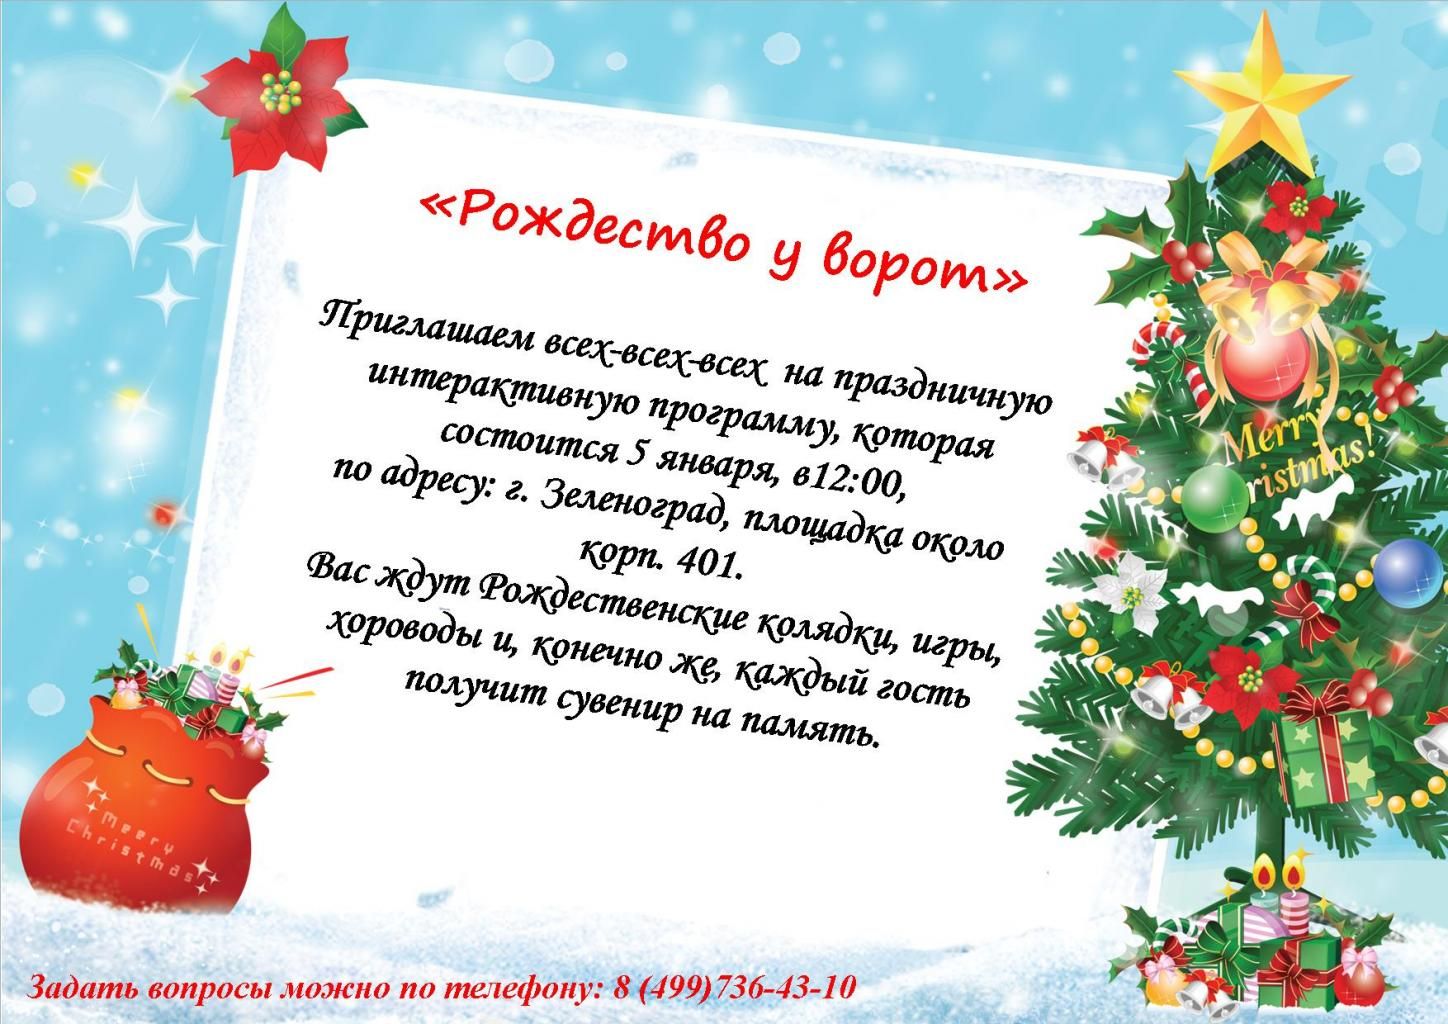 Жителей Матушкино приглашают на праздничную интерактивную программу, посвященную Рождеству Христову. 